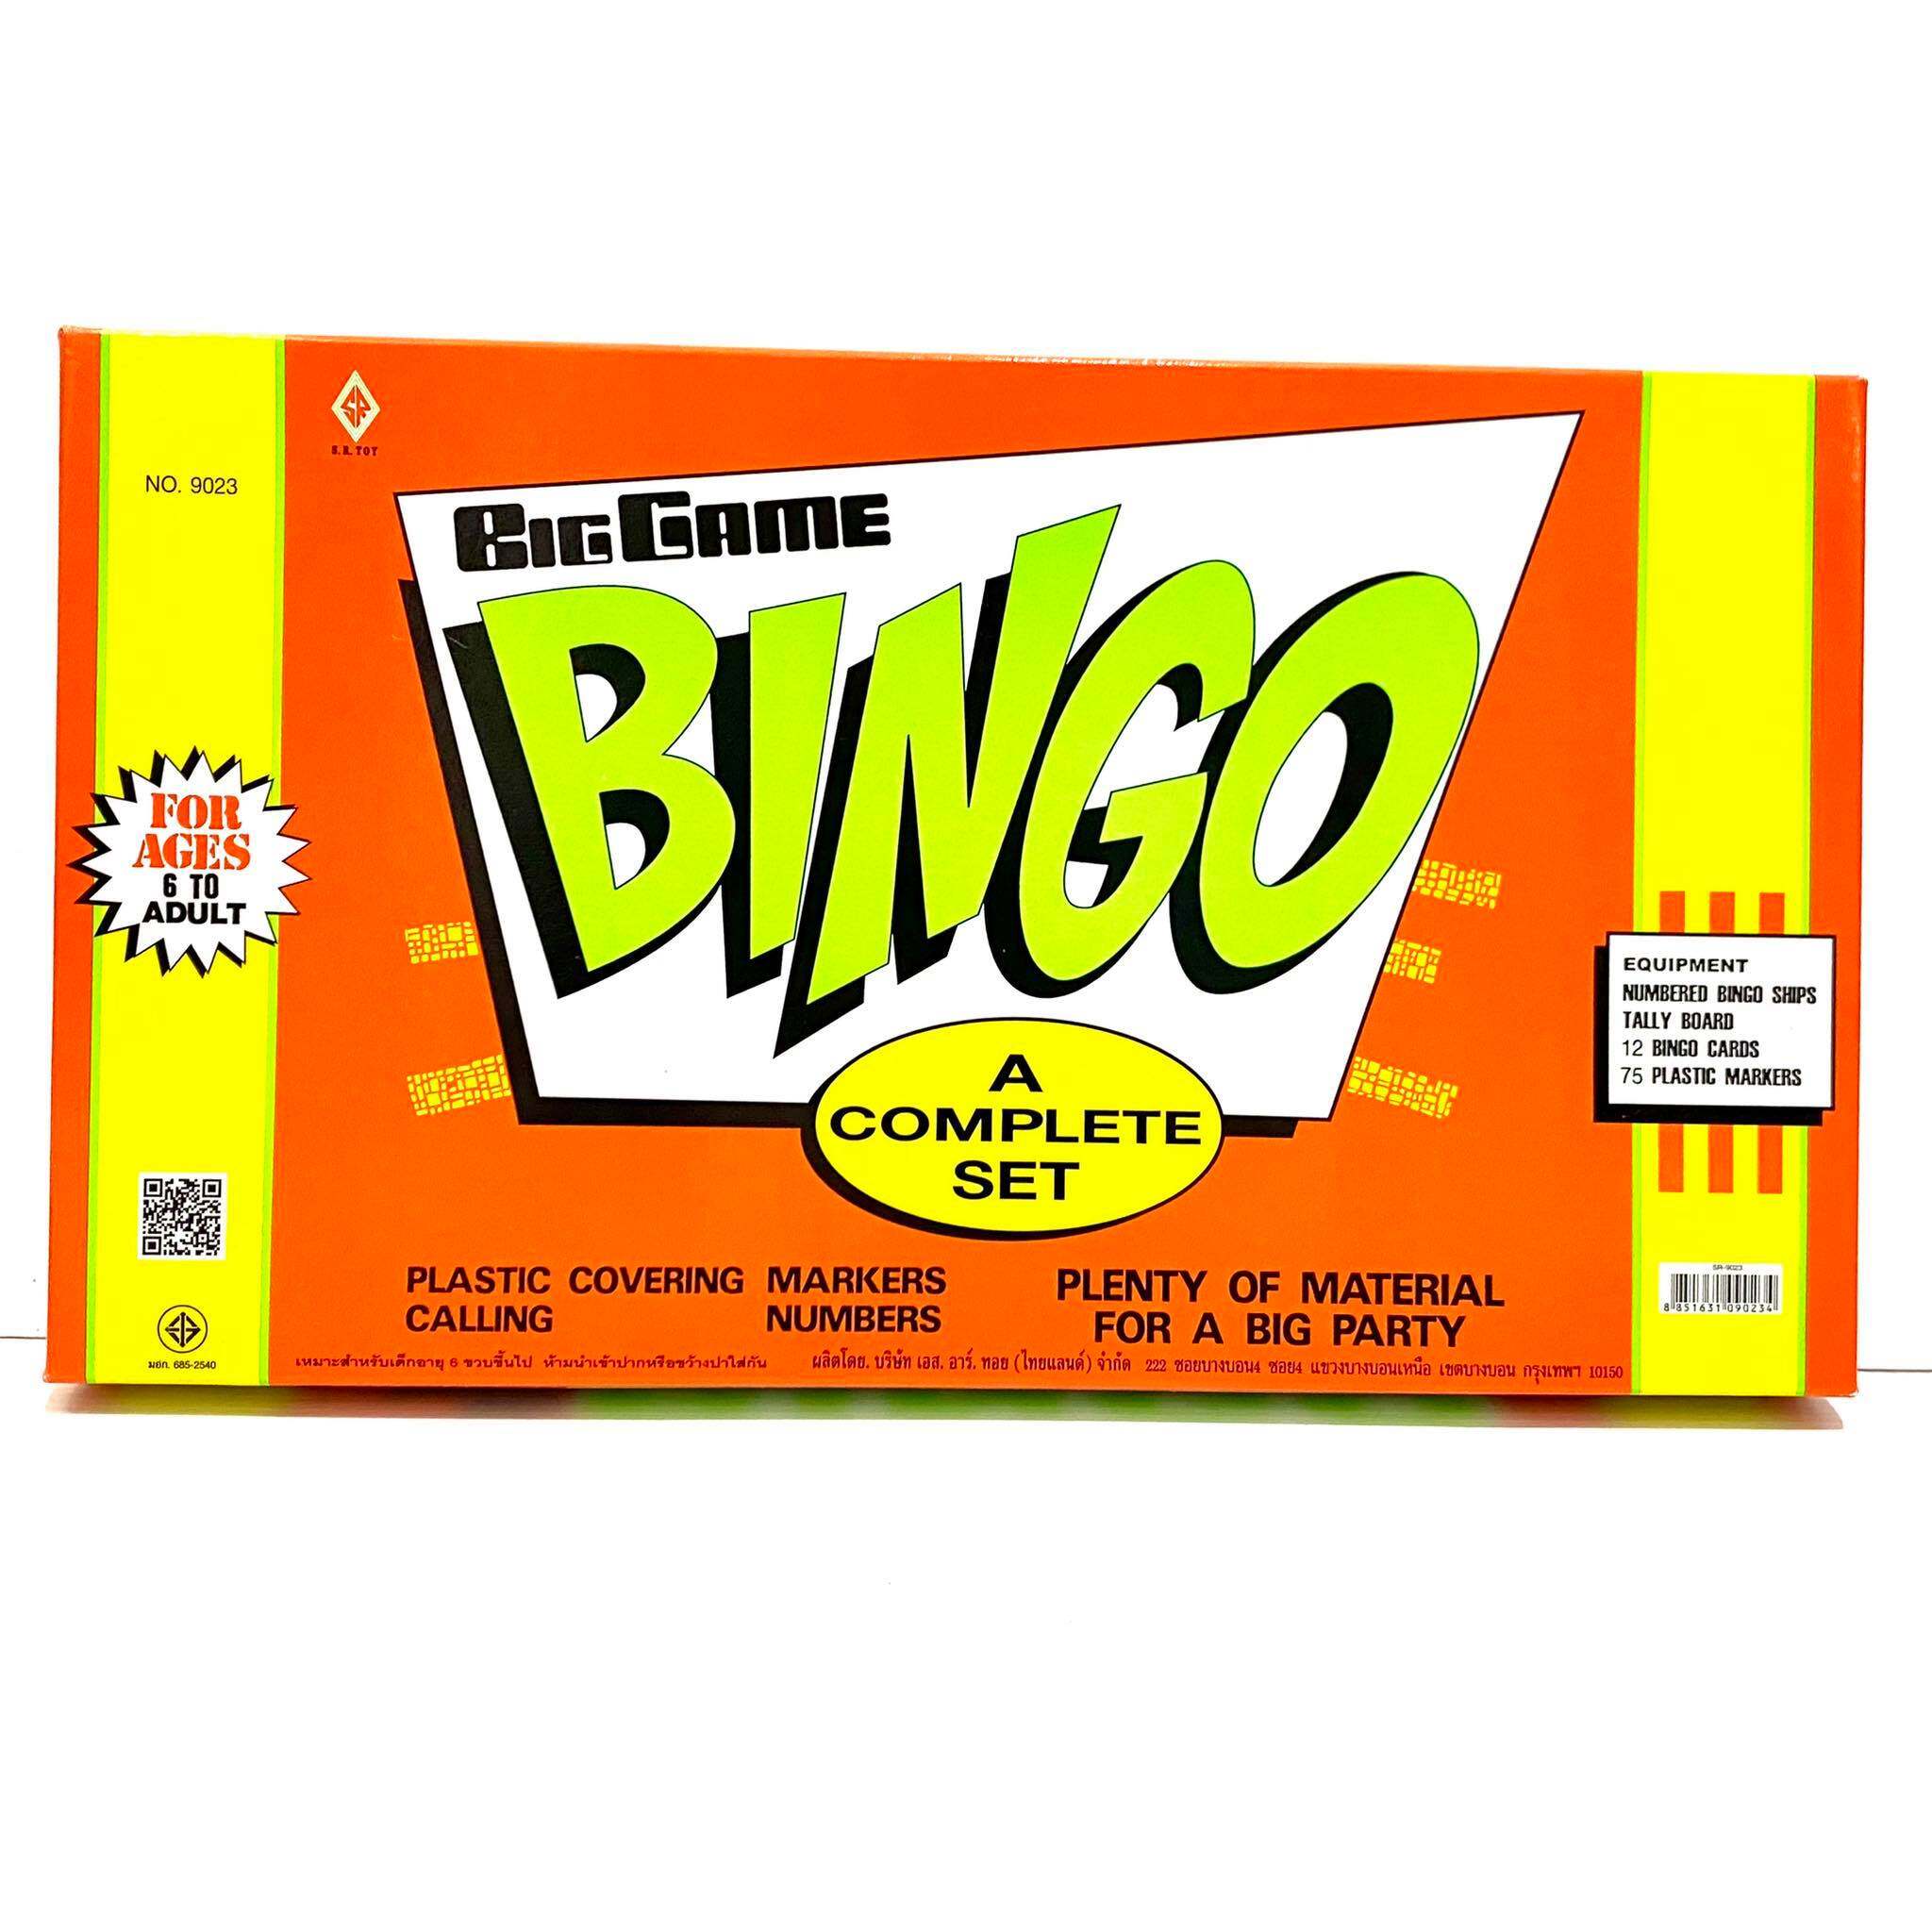 บิงโกใหญ่ บิงโกจัมโบ้ (Bingo Jumbo) 3ขนาด ราคาถูก✨